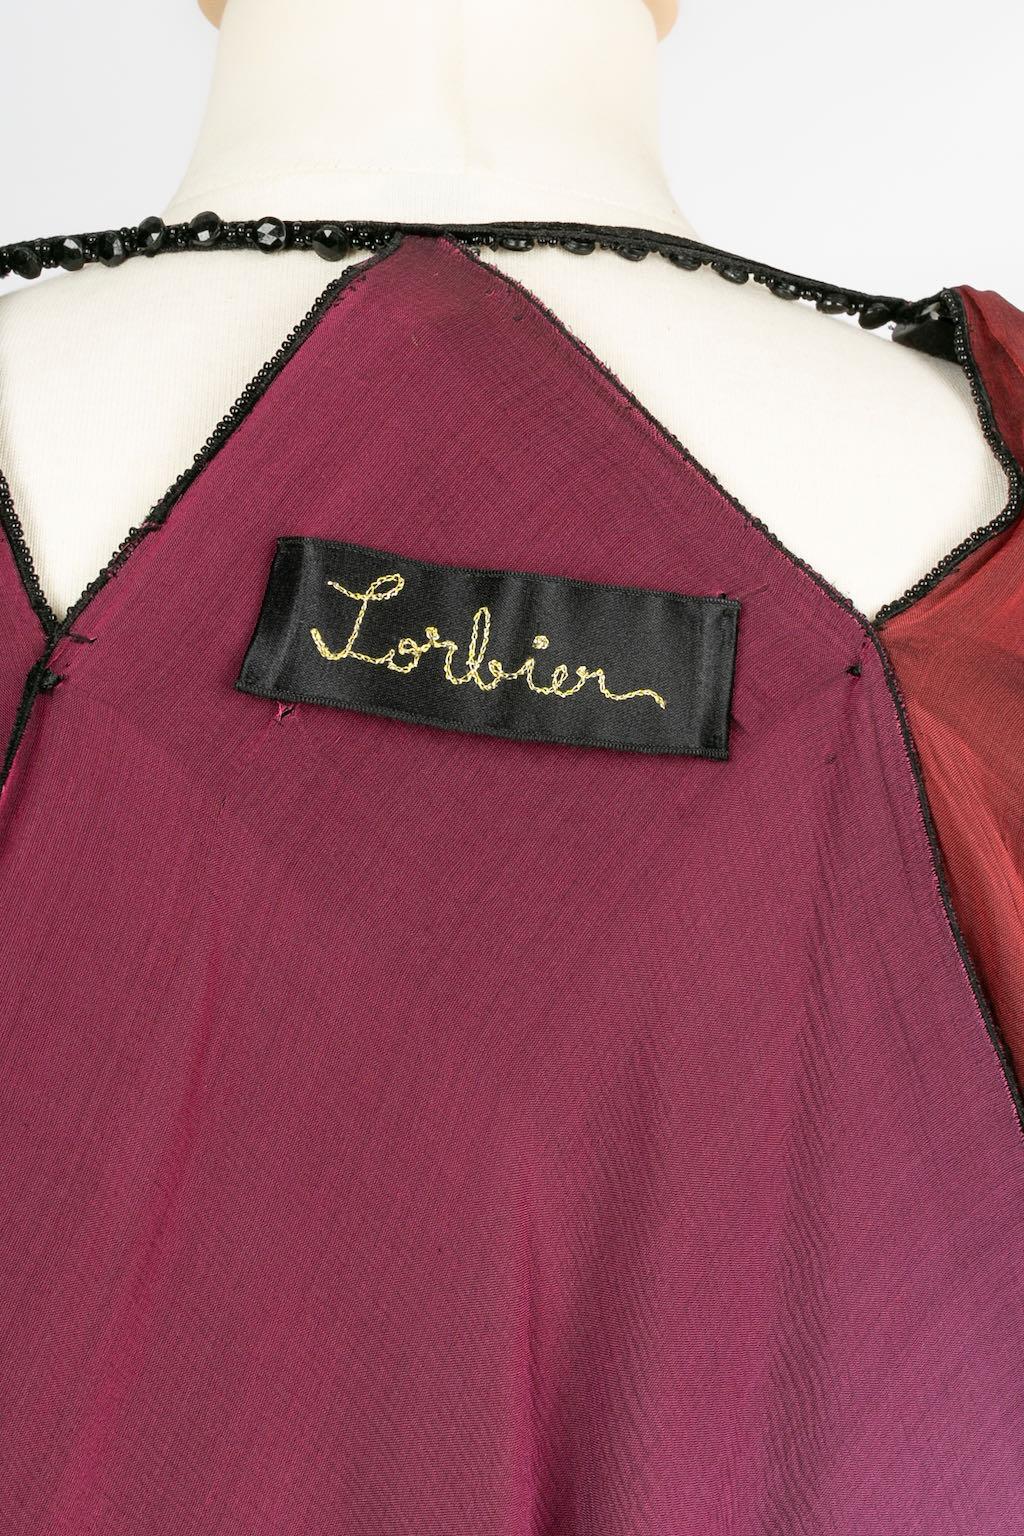 Franck Sorbier Haute Couture Cape in Velvet, 2014/15 For Sale 10